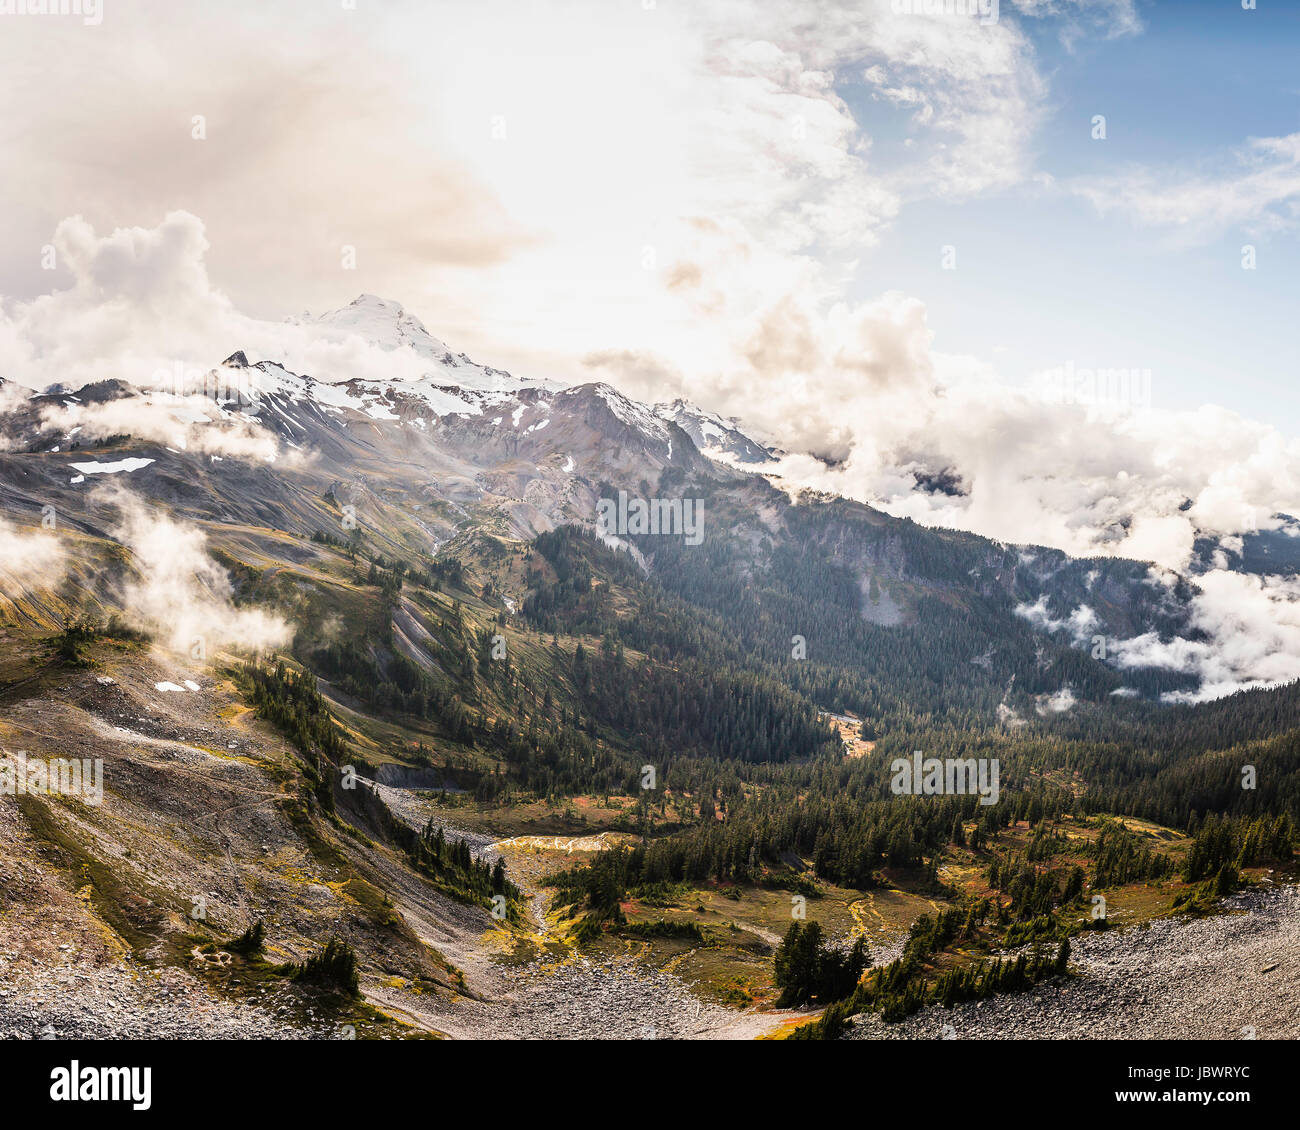 Sommets de montagnes couvertes de neige, le mont Baker, Washington, USA Banque D'Images